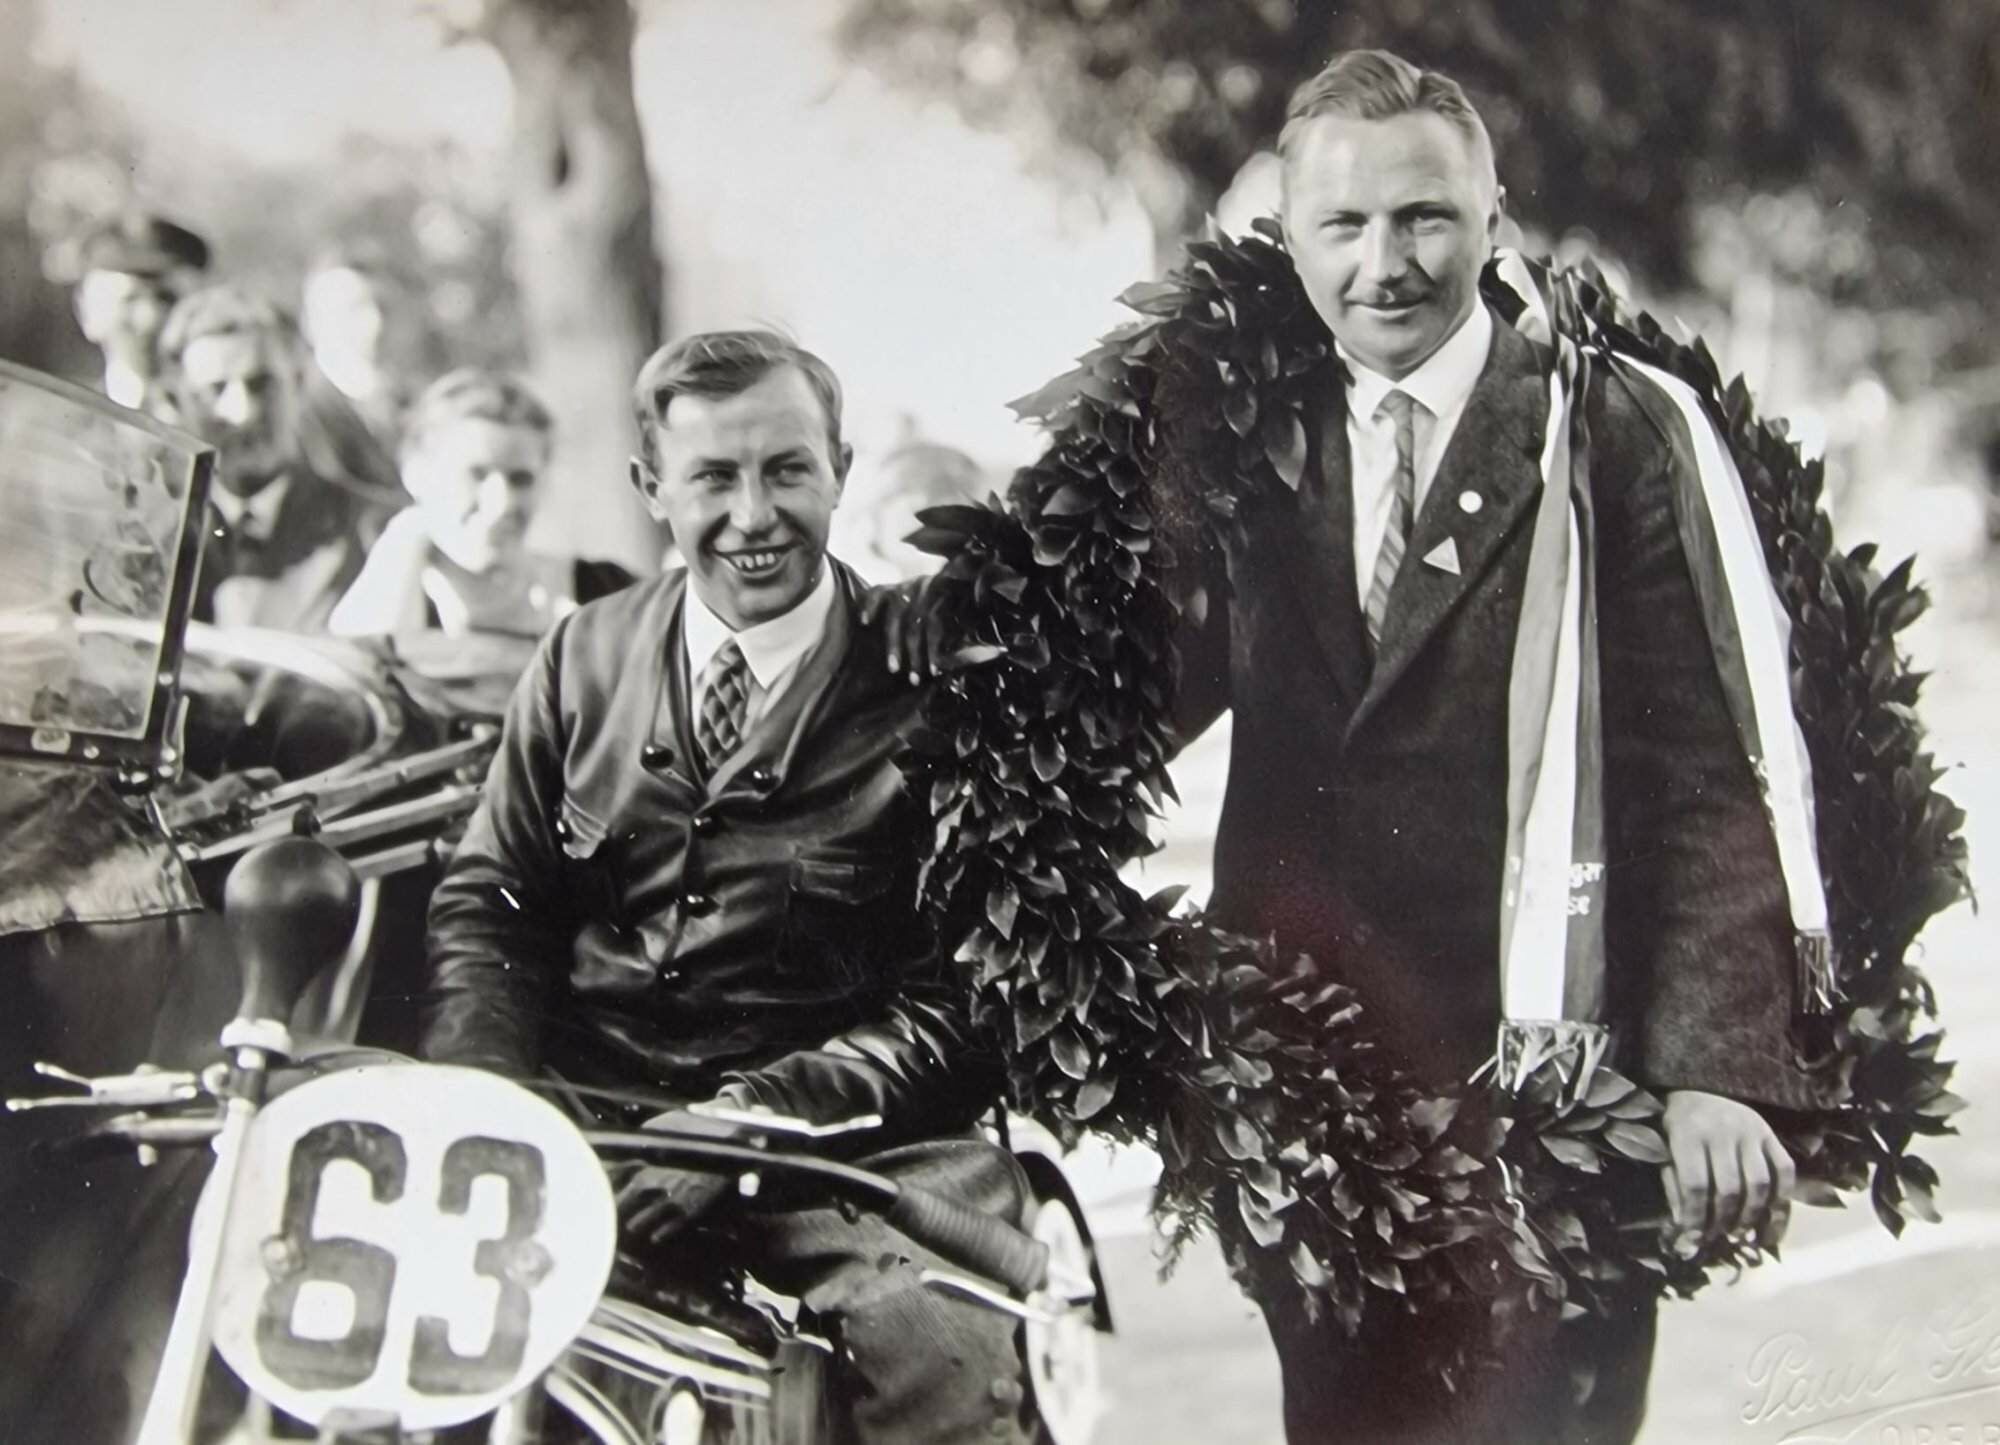 Opa Friedrich Dobberkau – Sieger Schleizer Dreieck Rennen 1928 auf Ardie Sport 350  (Paul Greifzu links)